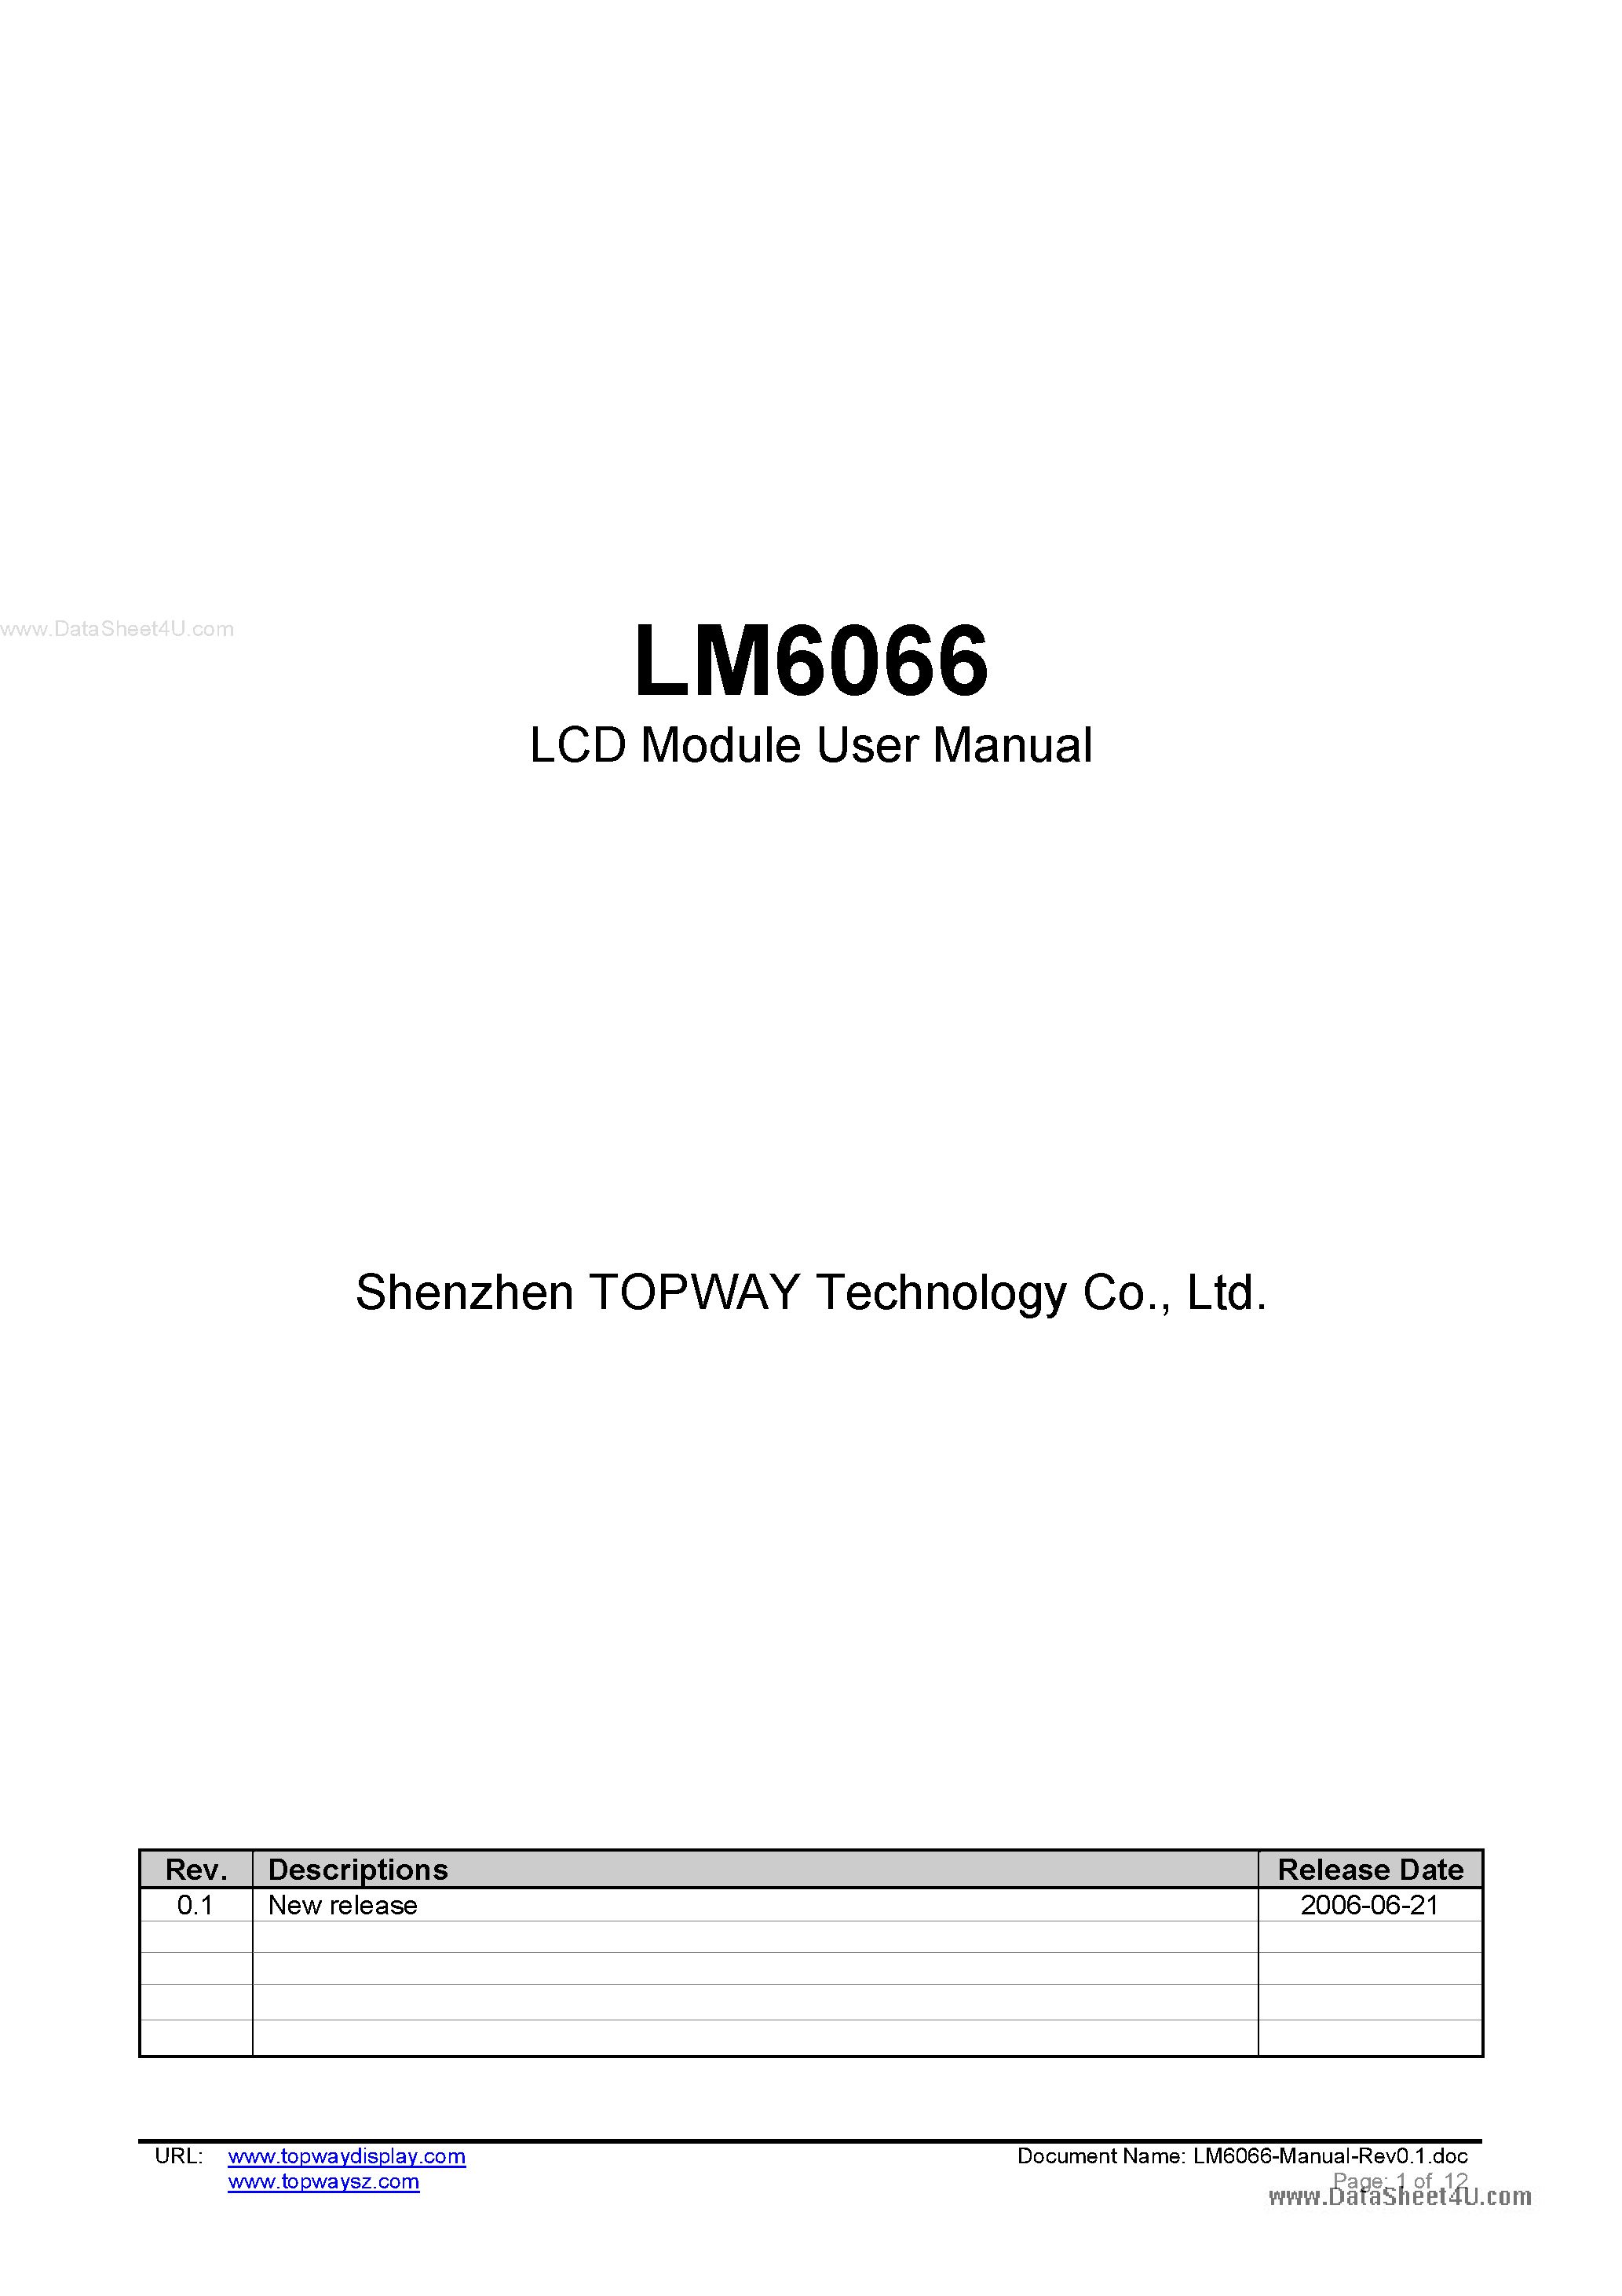 Даташит LM6066 - LCD Module страница 1